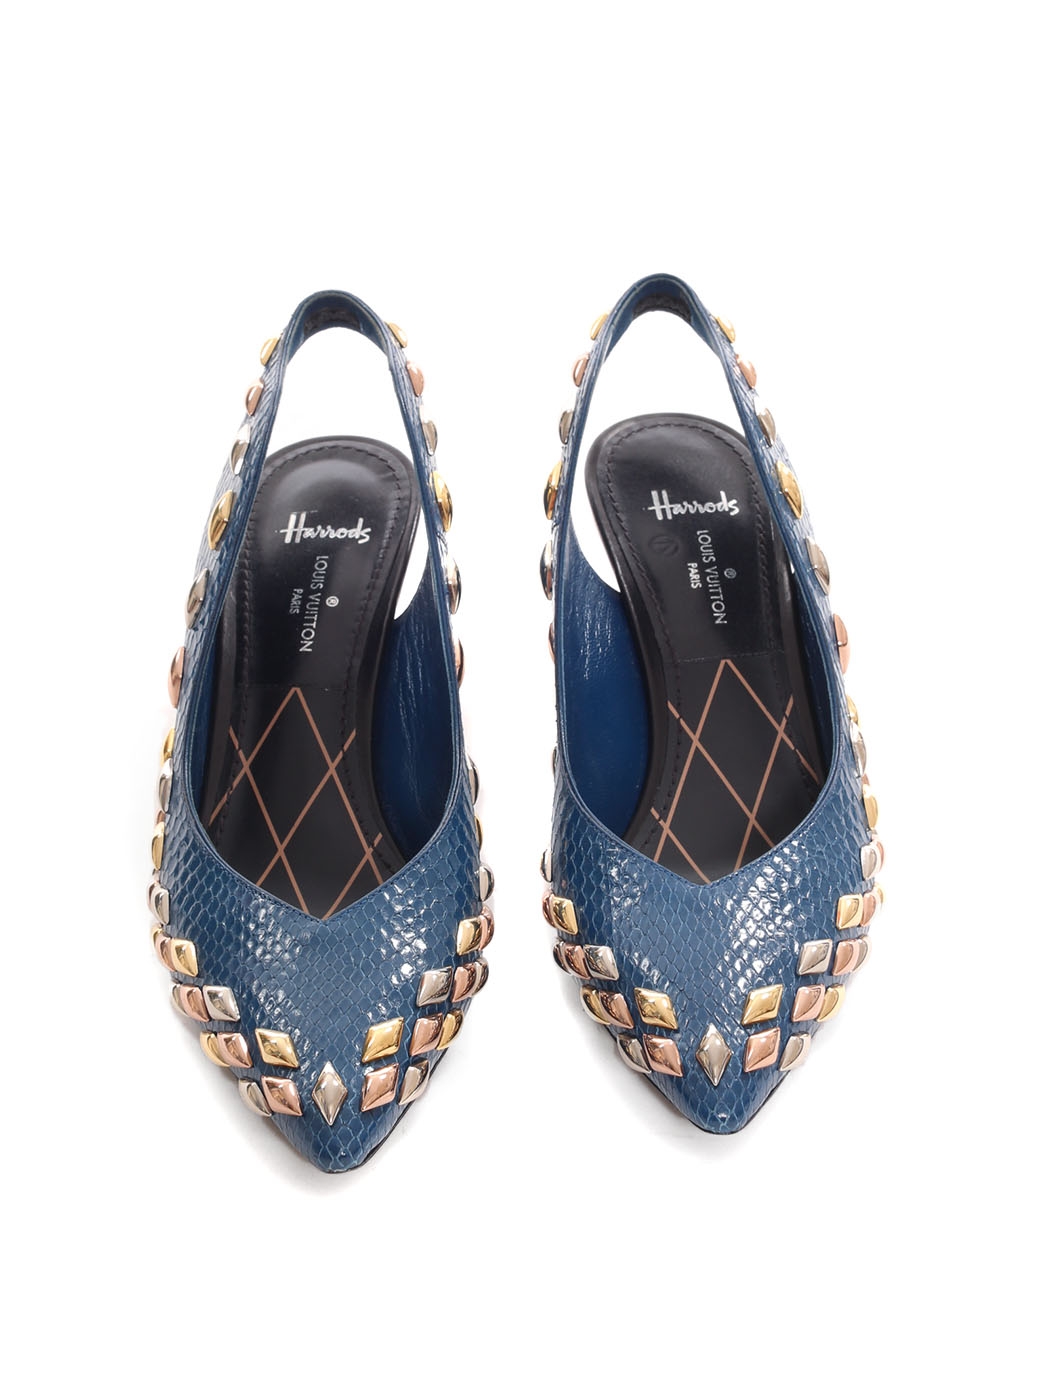 Louis Vuitton, Shoes, Louis Vuitton Python Pump Mary Jane